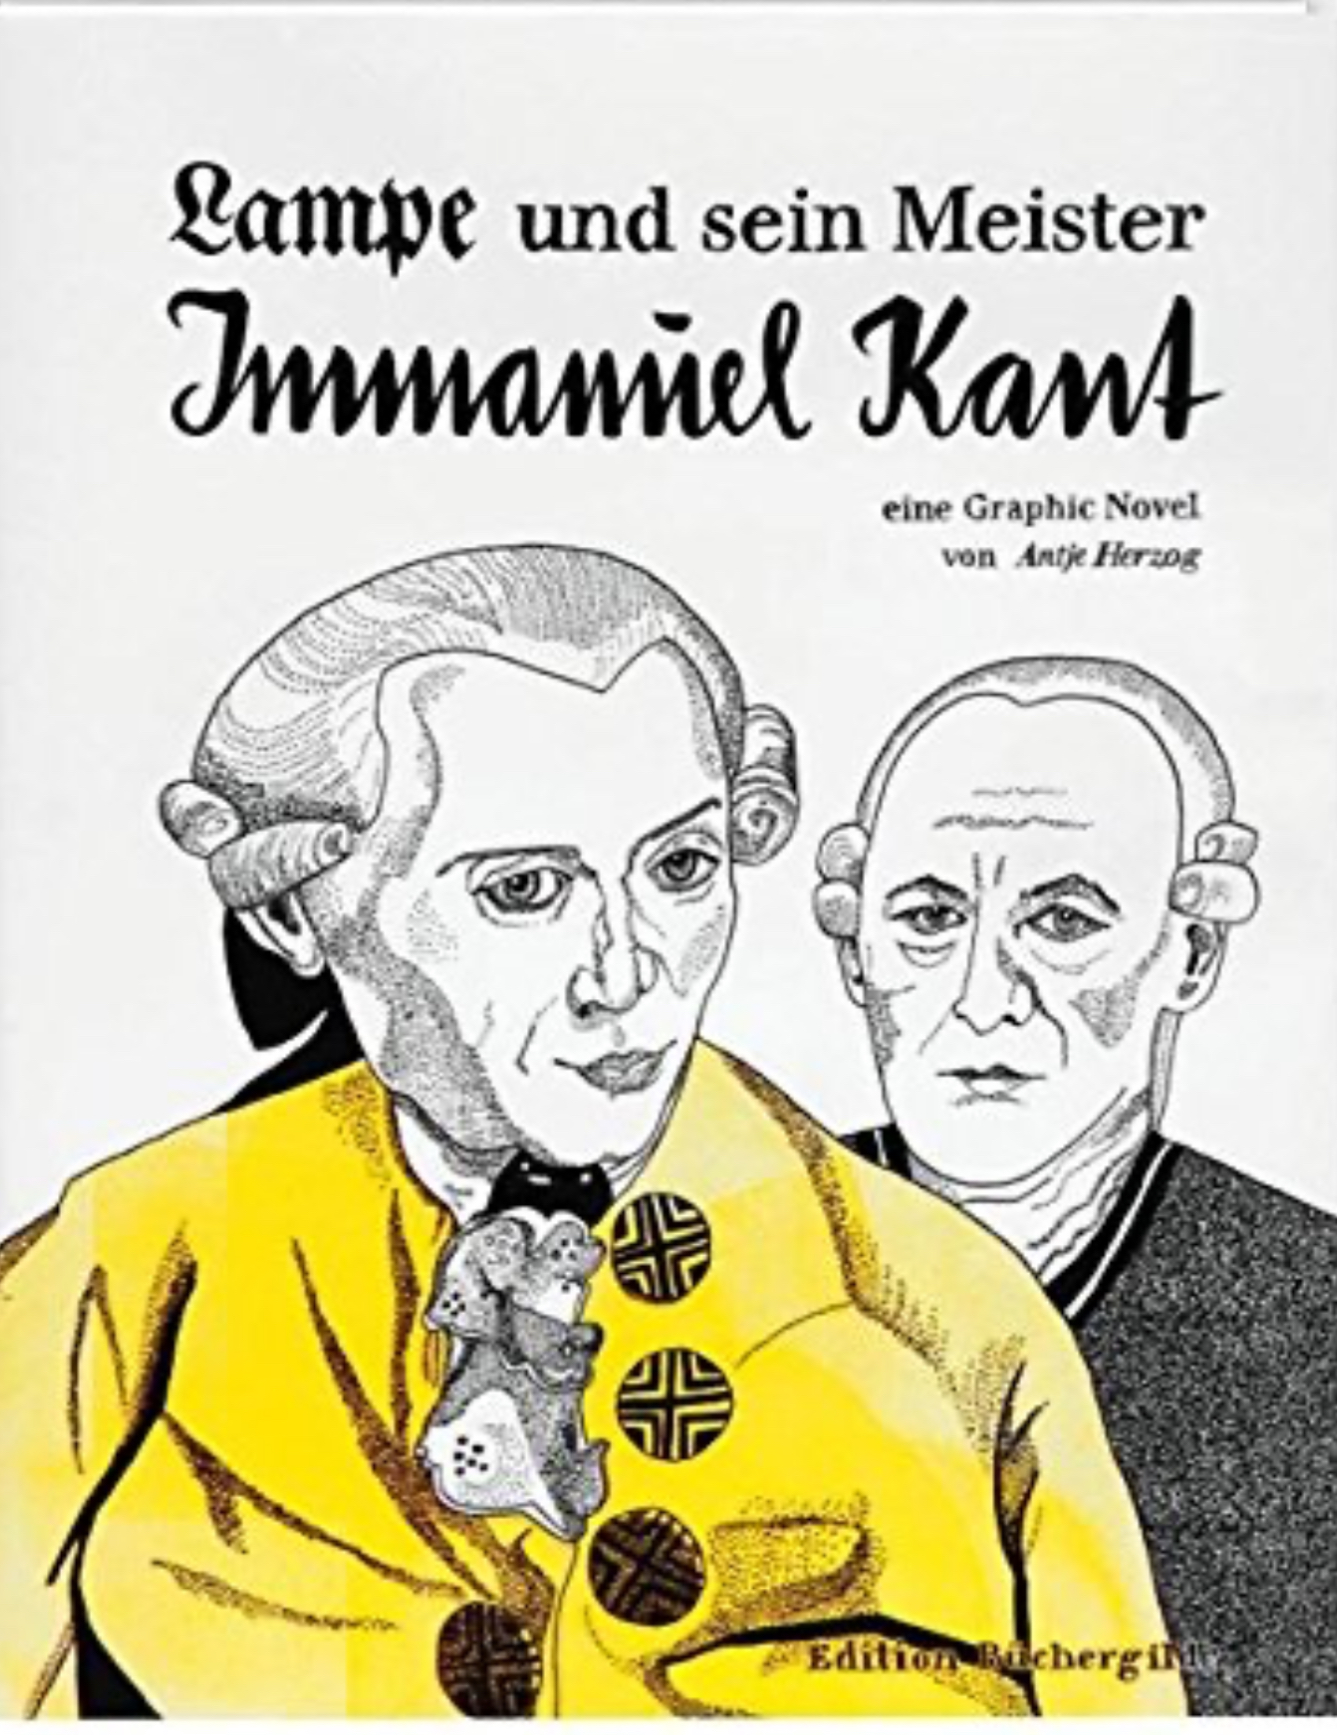 Antje Herzog: Lampe und sein Meister Immanuel Kant (Deutsch language, Edition Büchergilde)